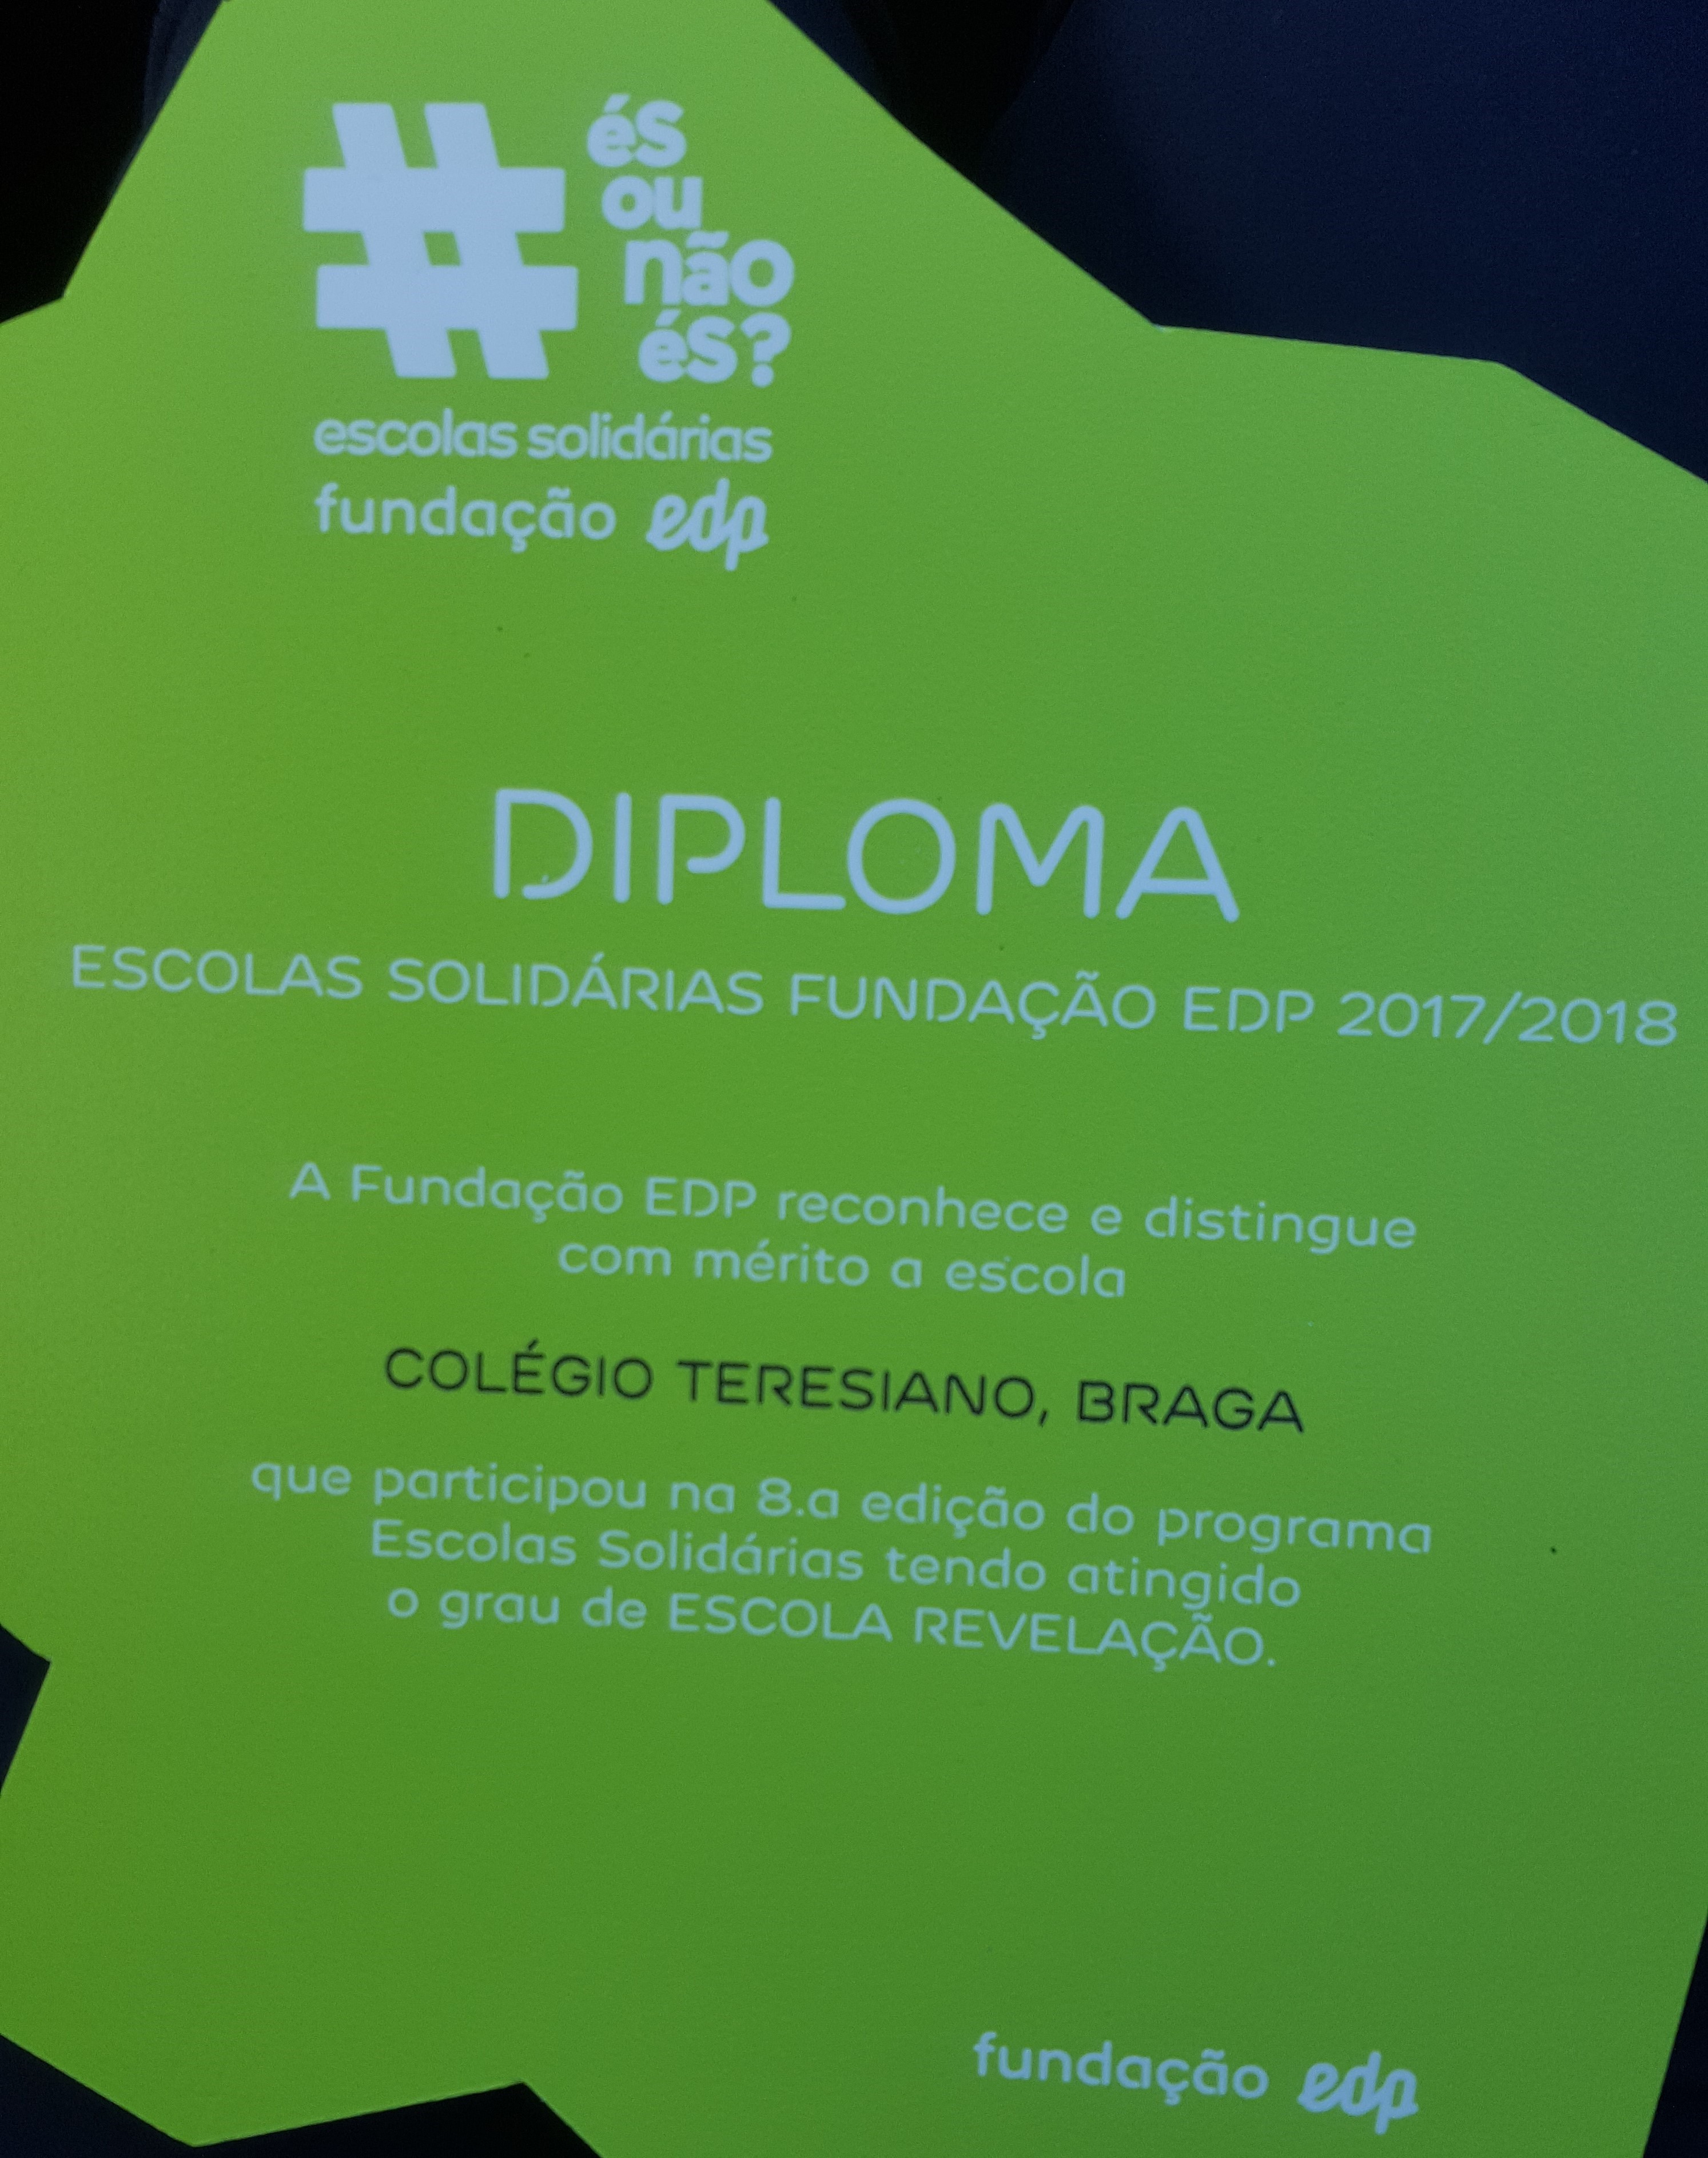 Colégio Teresiano de Braga - Escolas Solidárias